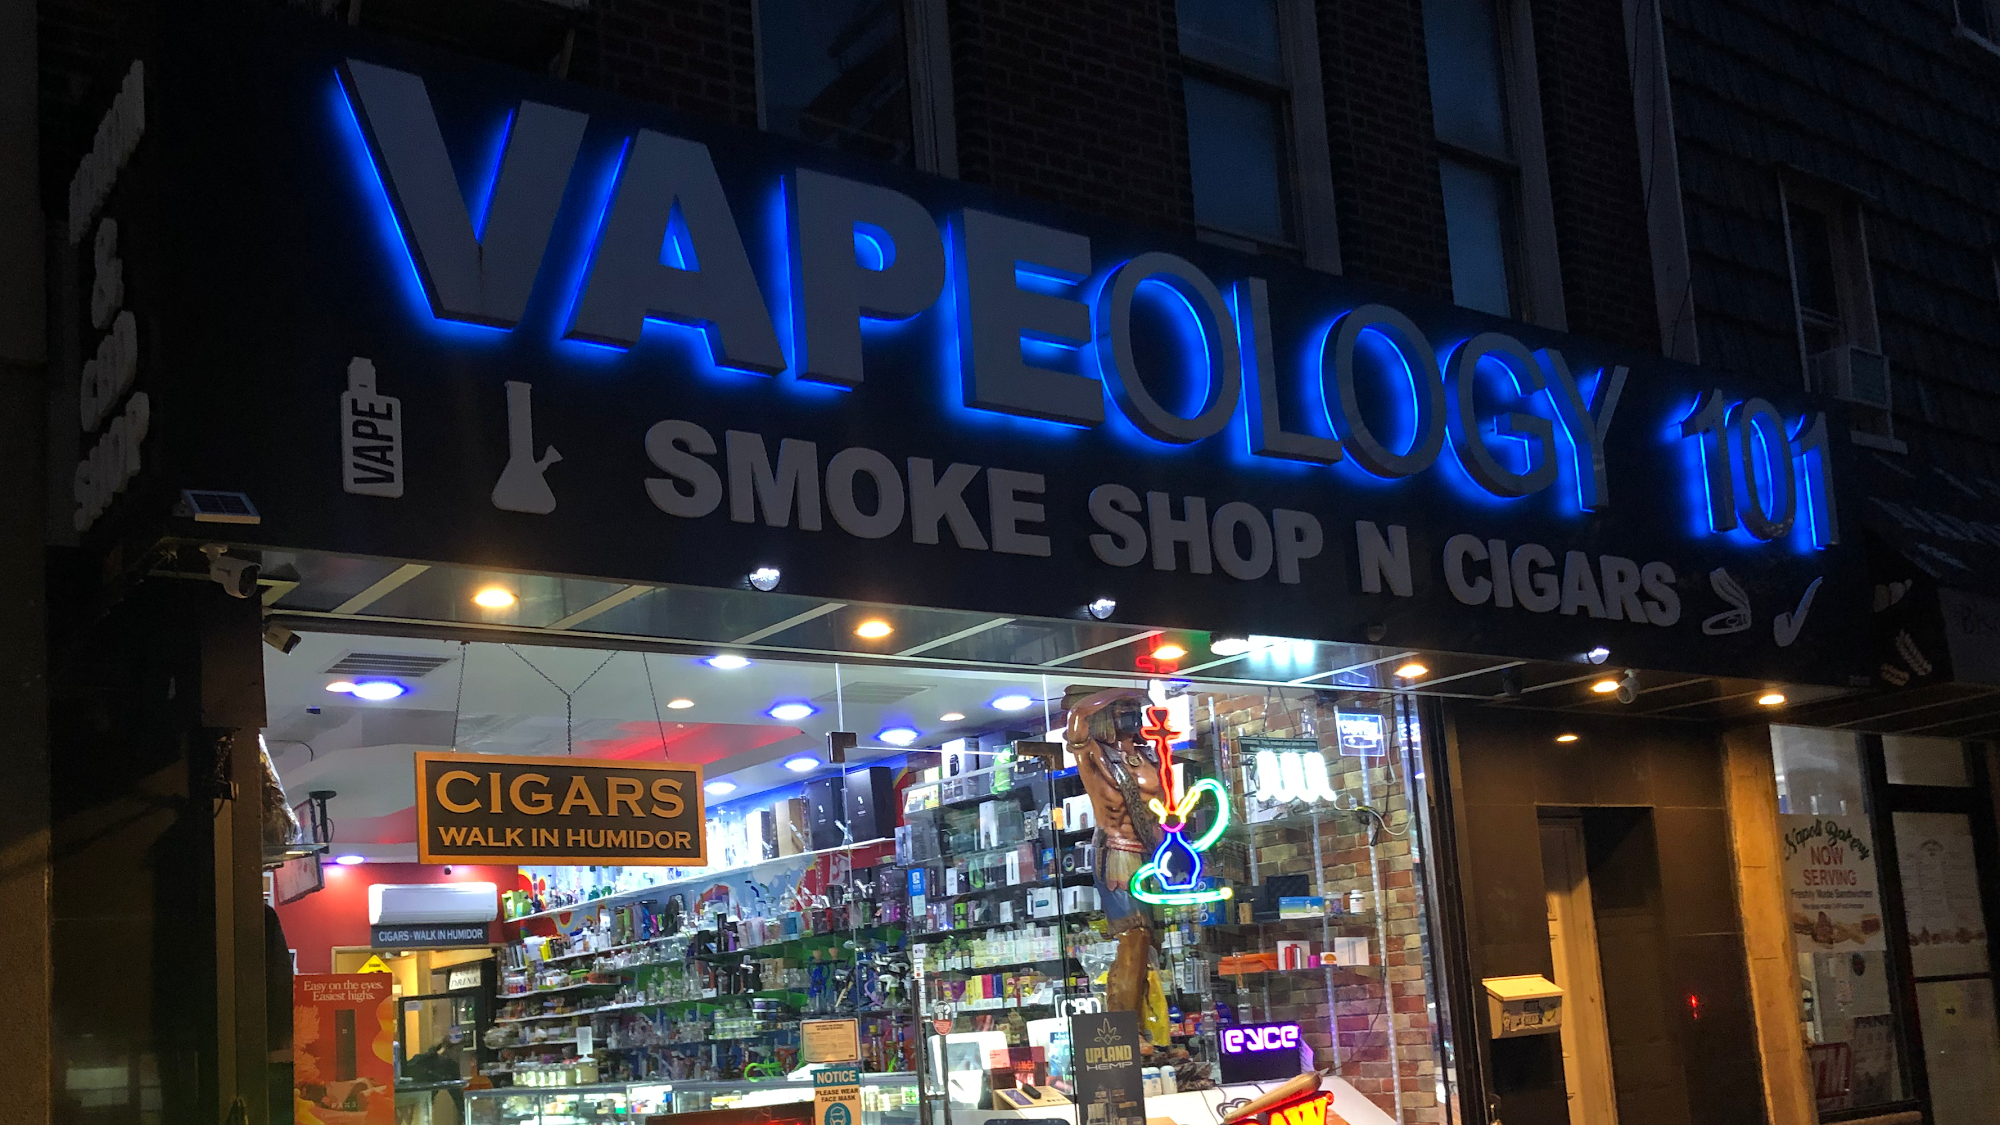 Smoke Shop N Cigars Vapeology101